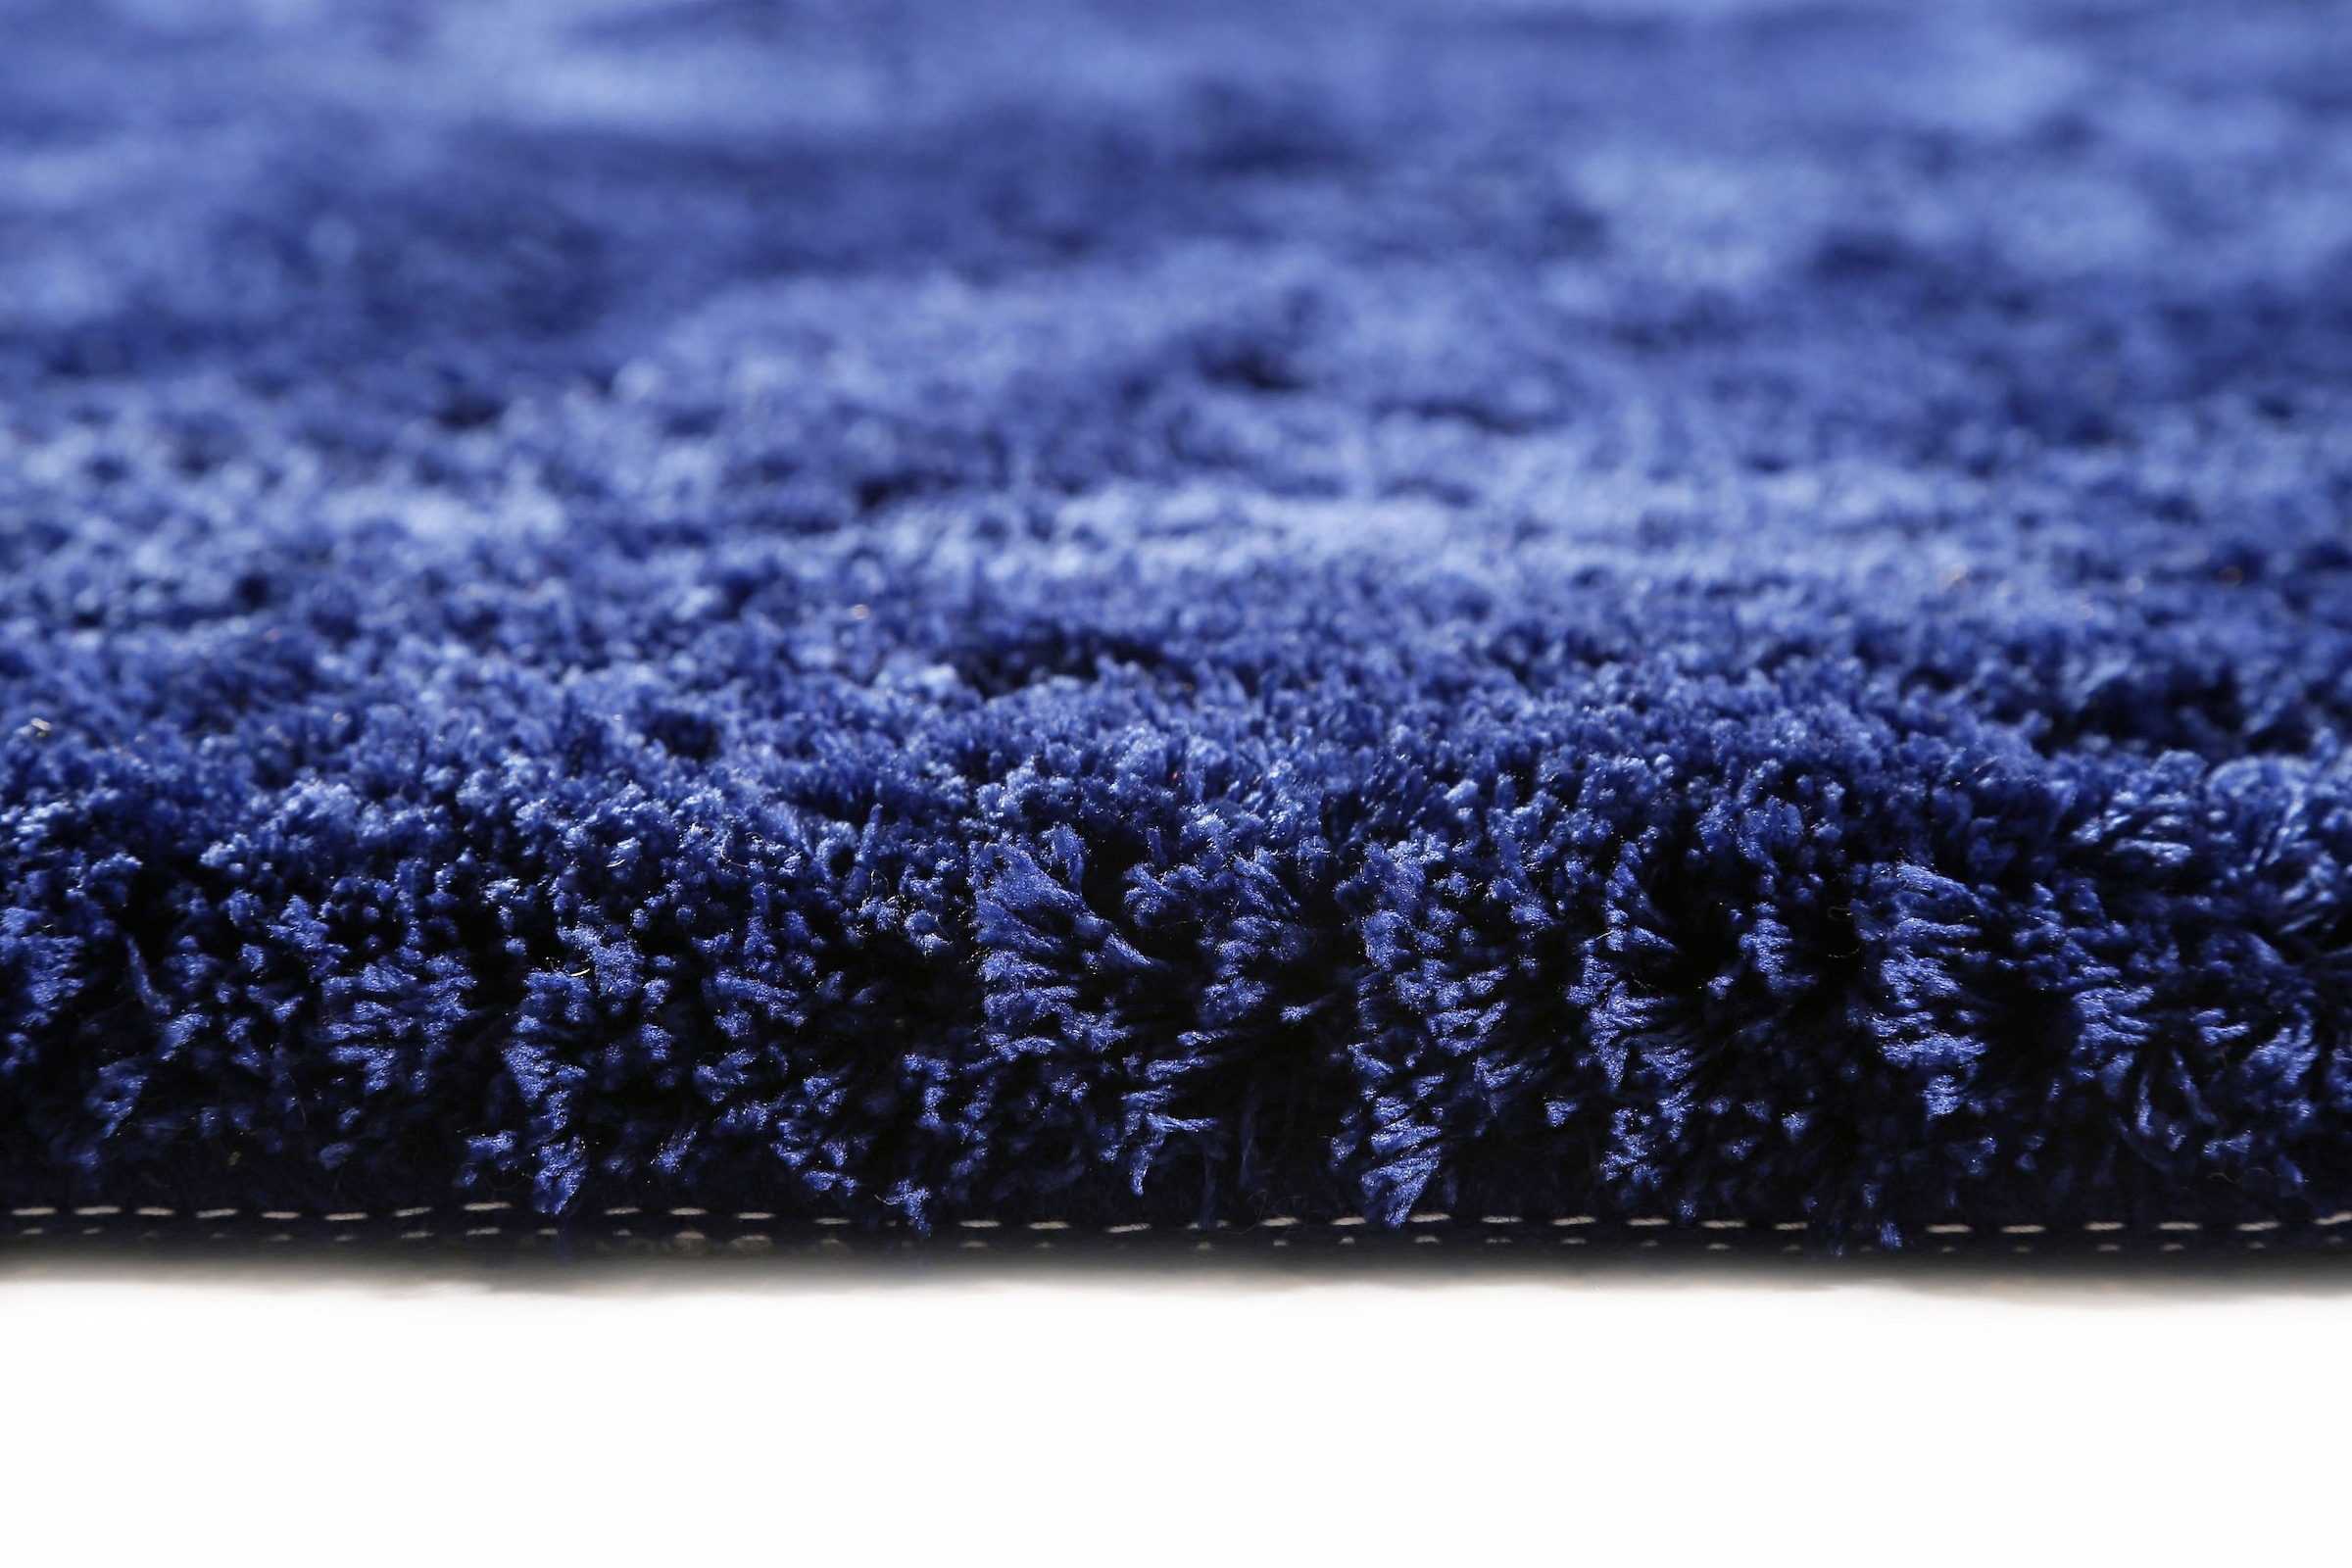 Homie Living Badematte »Porto Azzurro«, Höhe 30 mm, rutschhemmend beschichtet, fußbodenheizungsgeeignet-schnell trocknend, Badteppich, uni, rechteckig & rund, waschbar, Badezimmerteppich